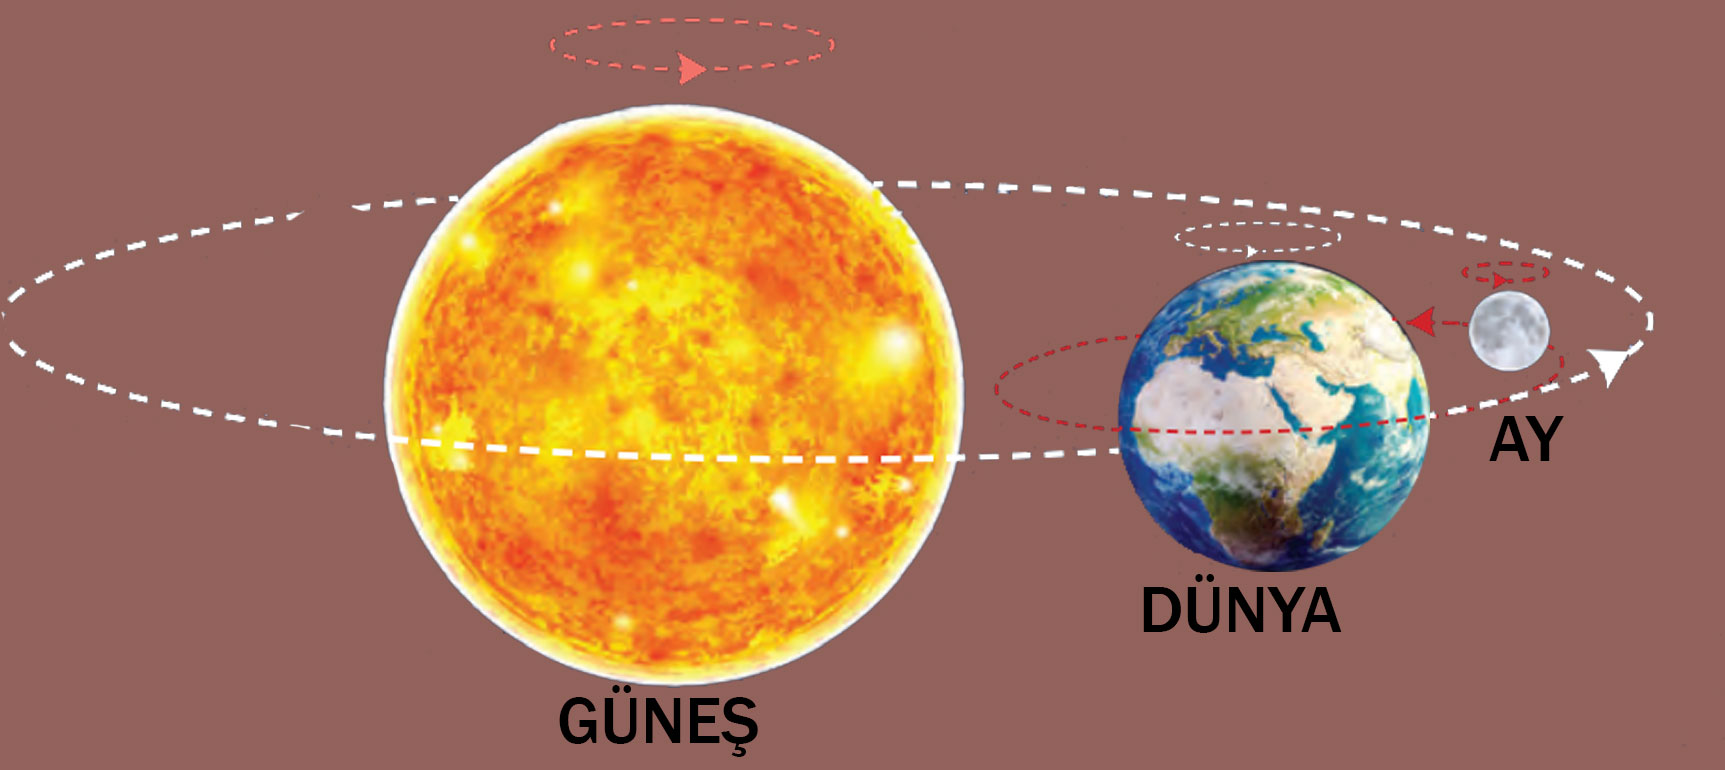 Aşağıda Güneş, Dünya ve Ay modelleri verilmiştir. Modeller üzerine Güneş’in, Dünya’nın ve Ay’ın dönüş yönlerini çizelim.